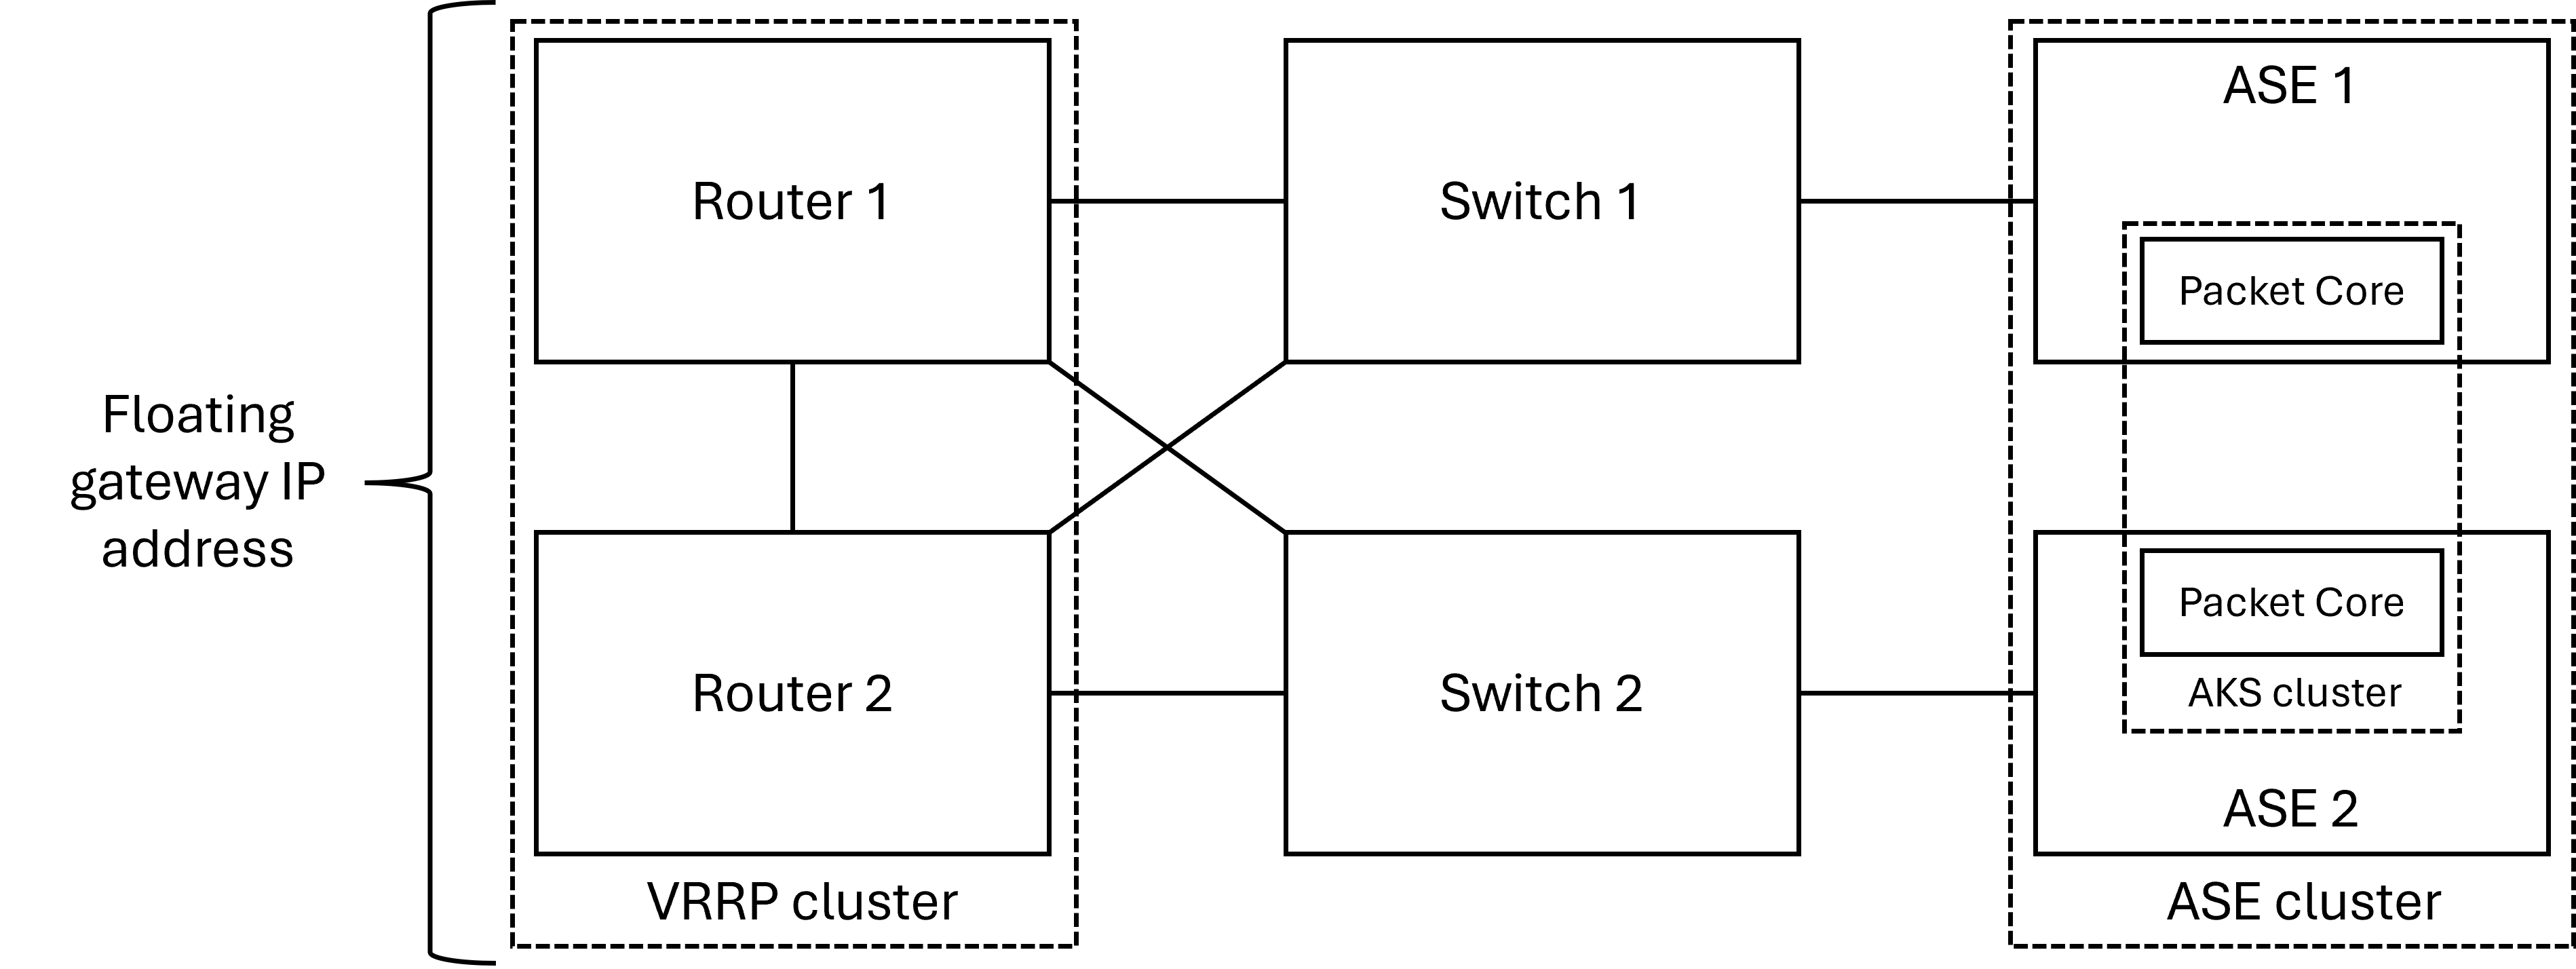 Diagrama mostrando o layout físico da rede de acesso com um par de roteadores redundantes.